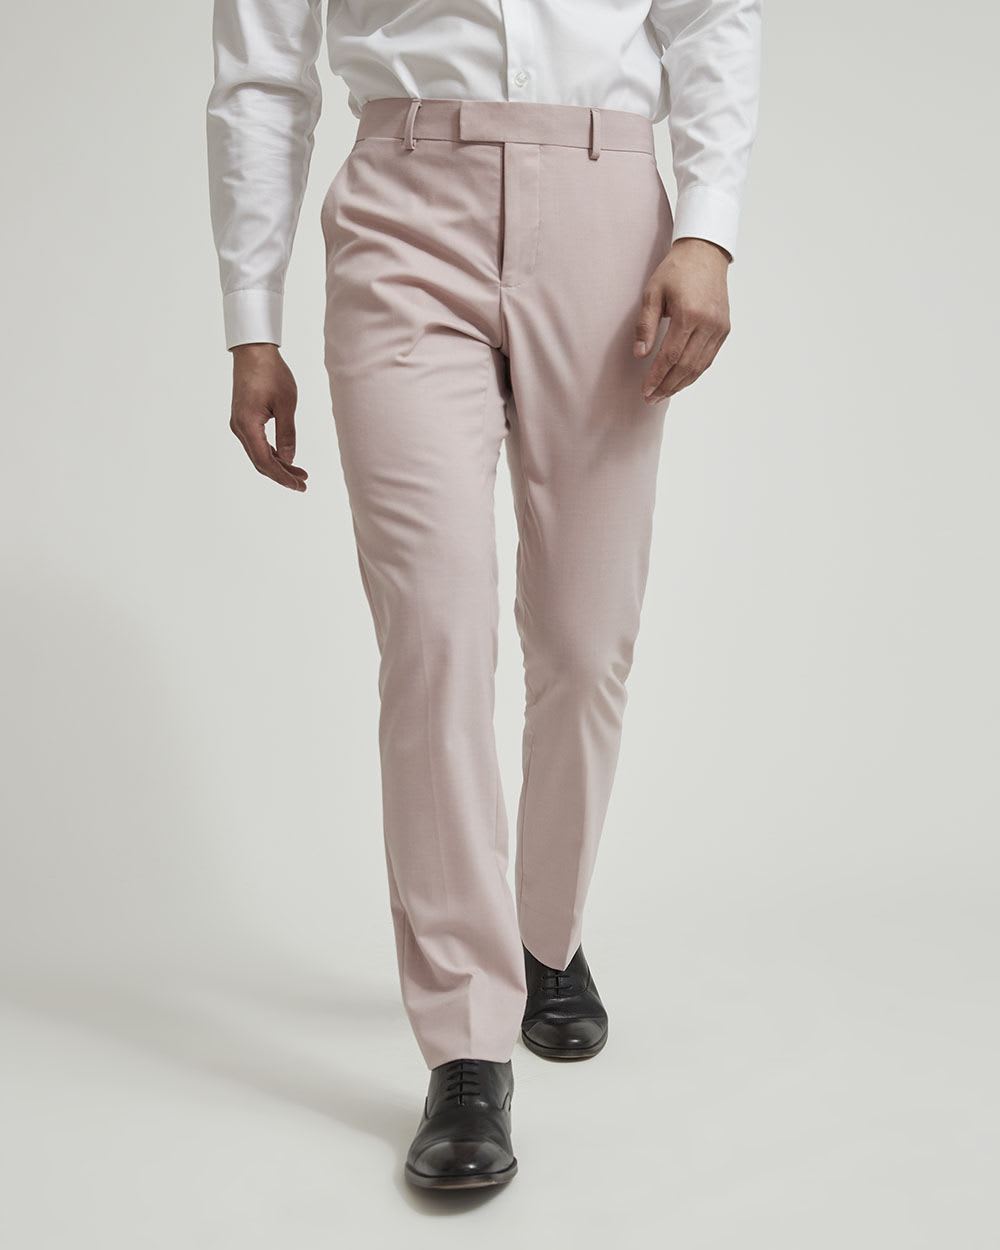 Pantalon de Complet Rose Pâle à Coupe Étroite